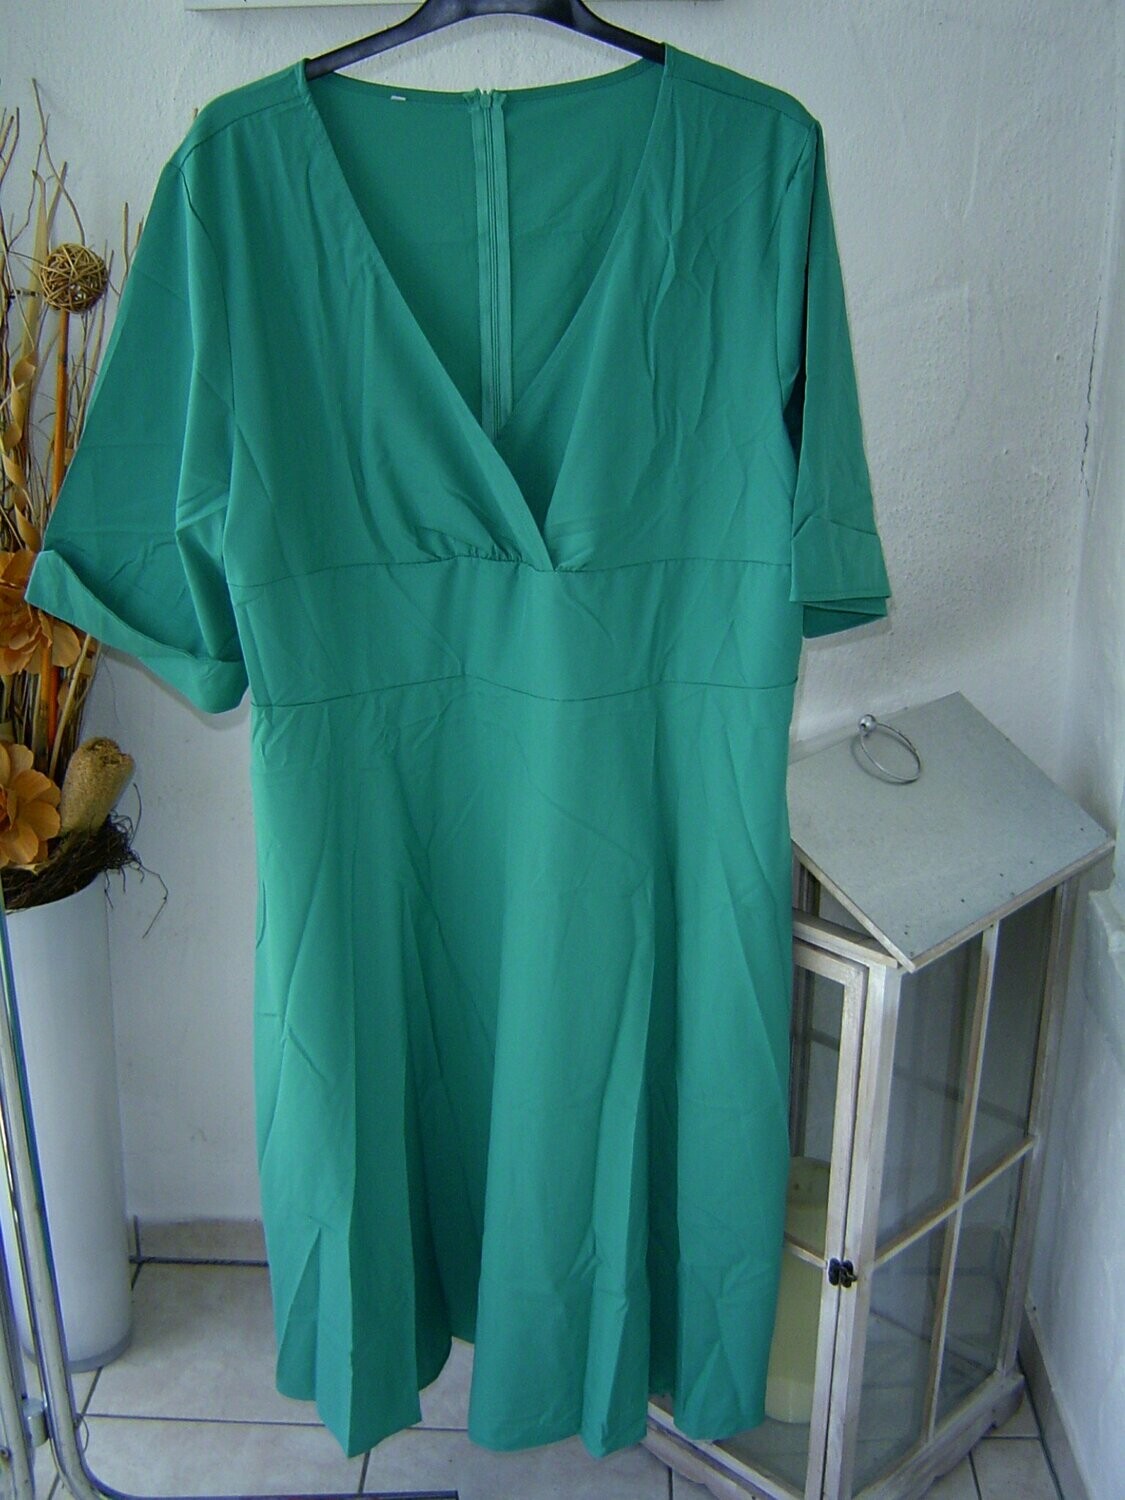 Damen Kleid Gr. 52 türkis Halbarm Länge 120cm